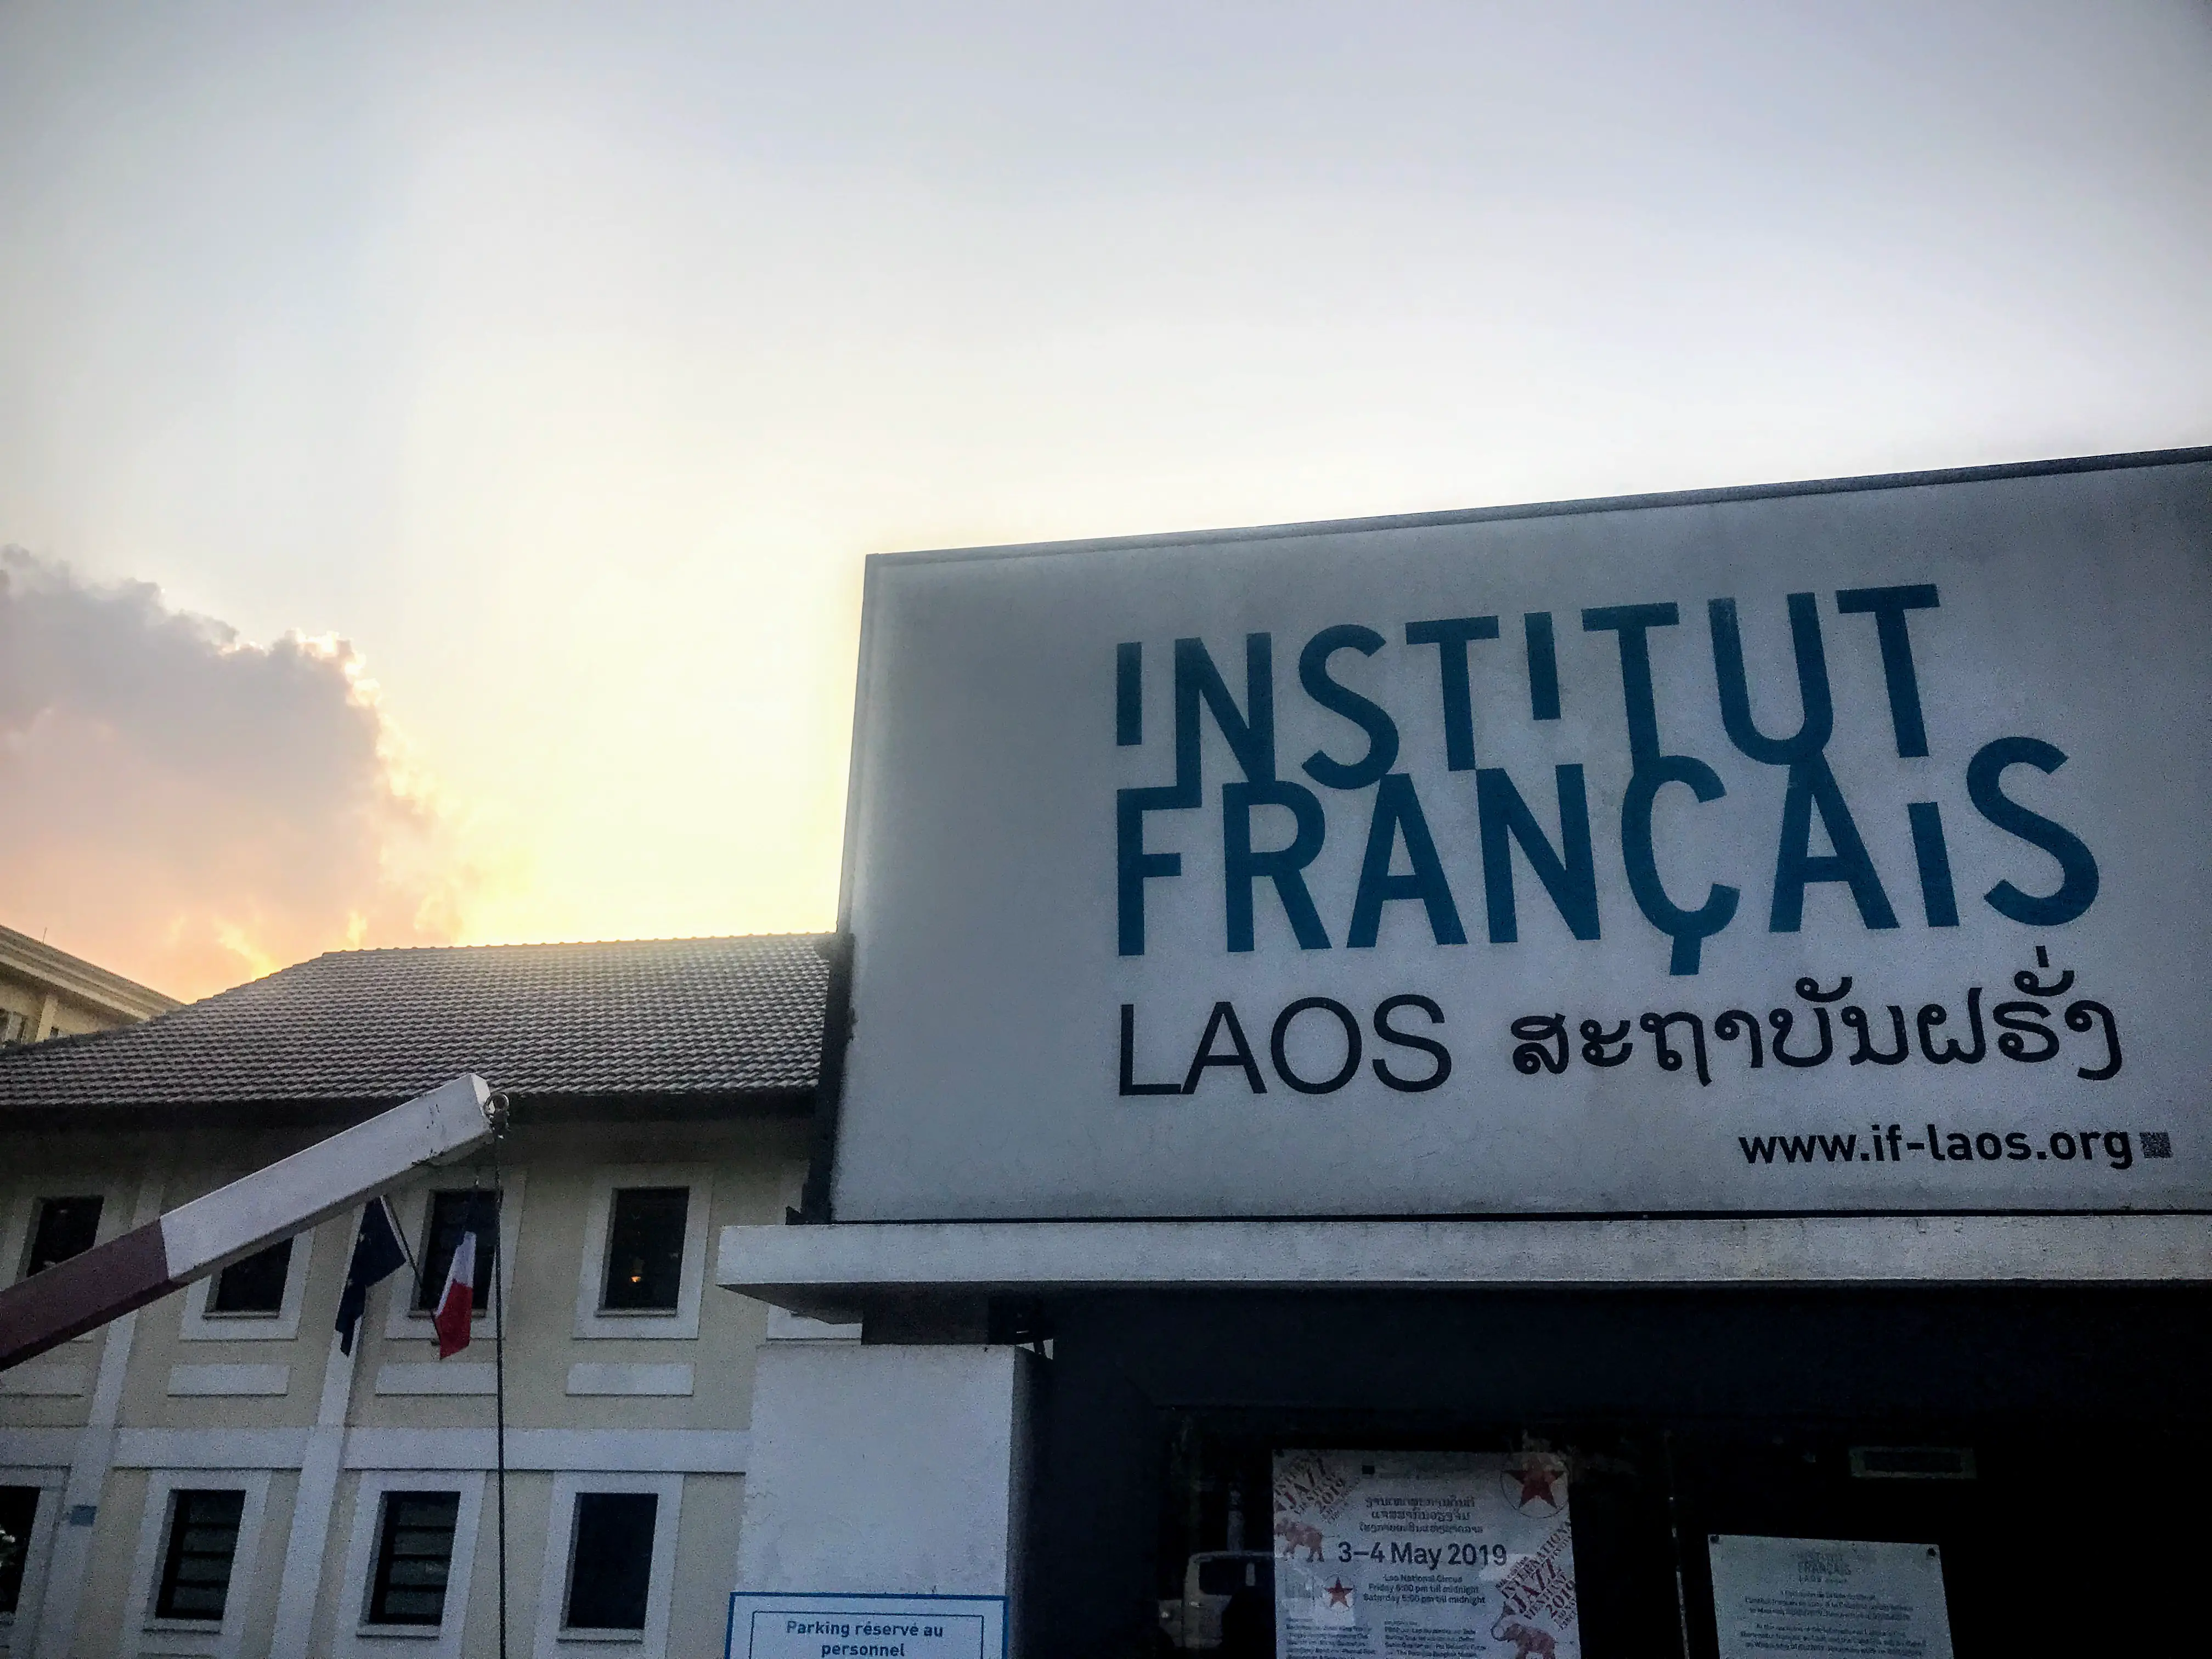 Institut Francais, Vientiane, Laos